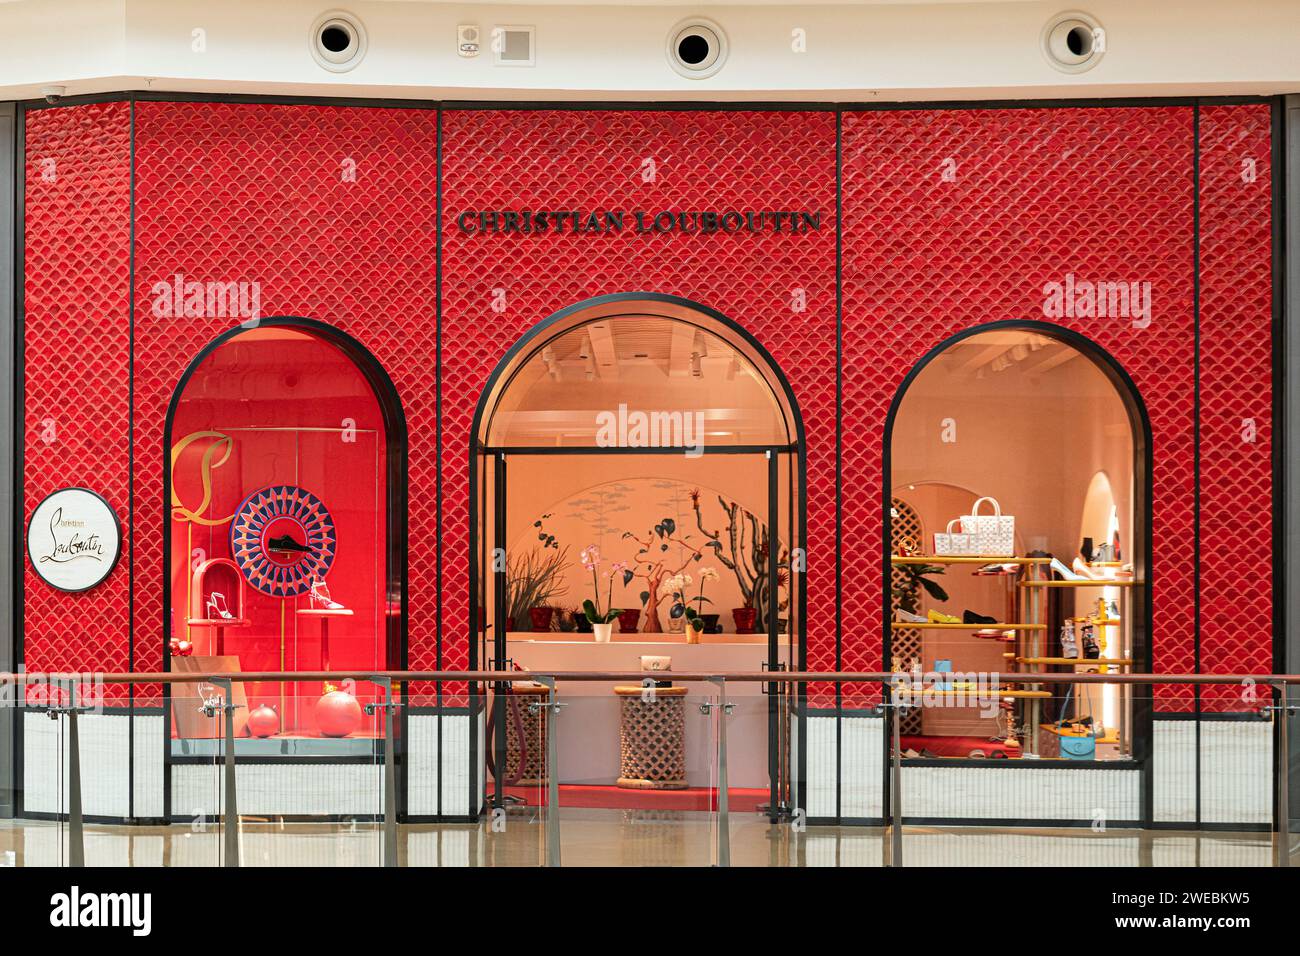 Christian Louboutin retail store. Stock Photo